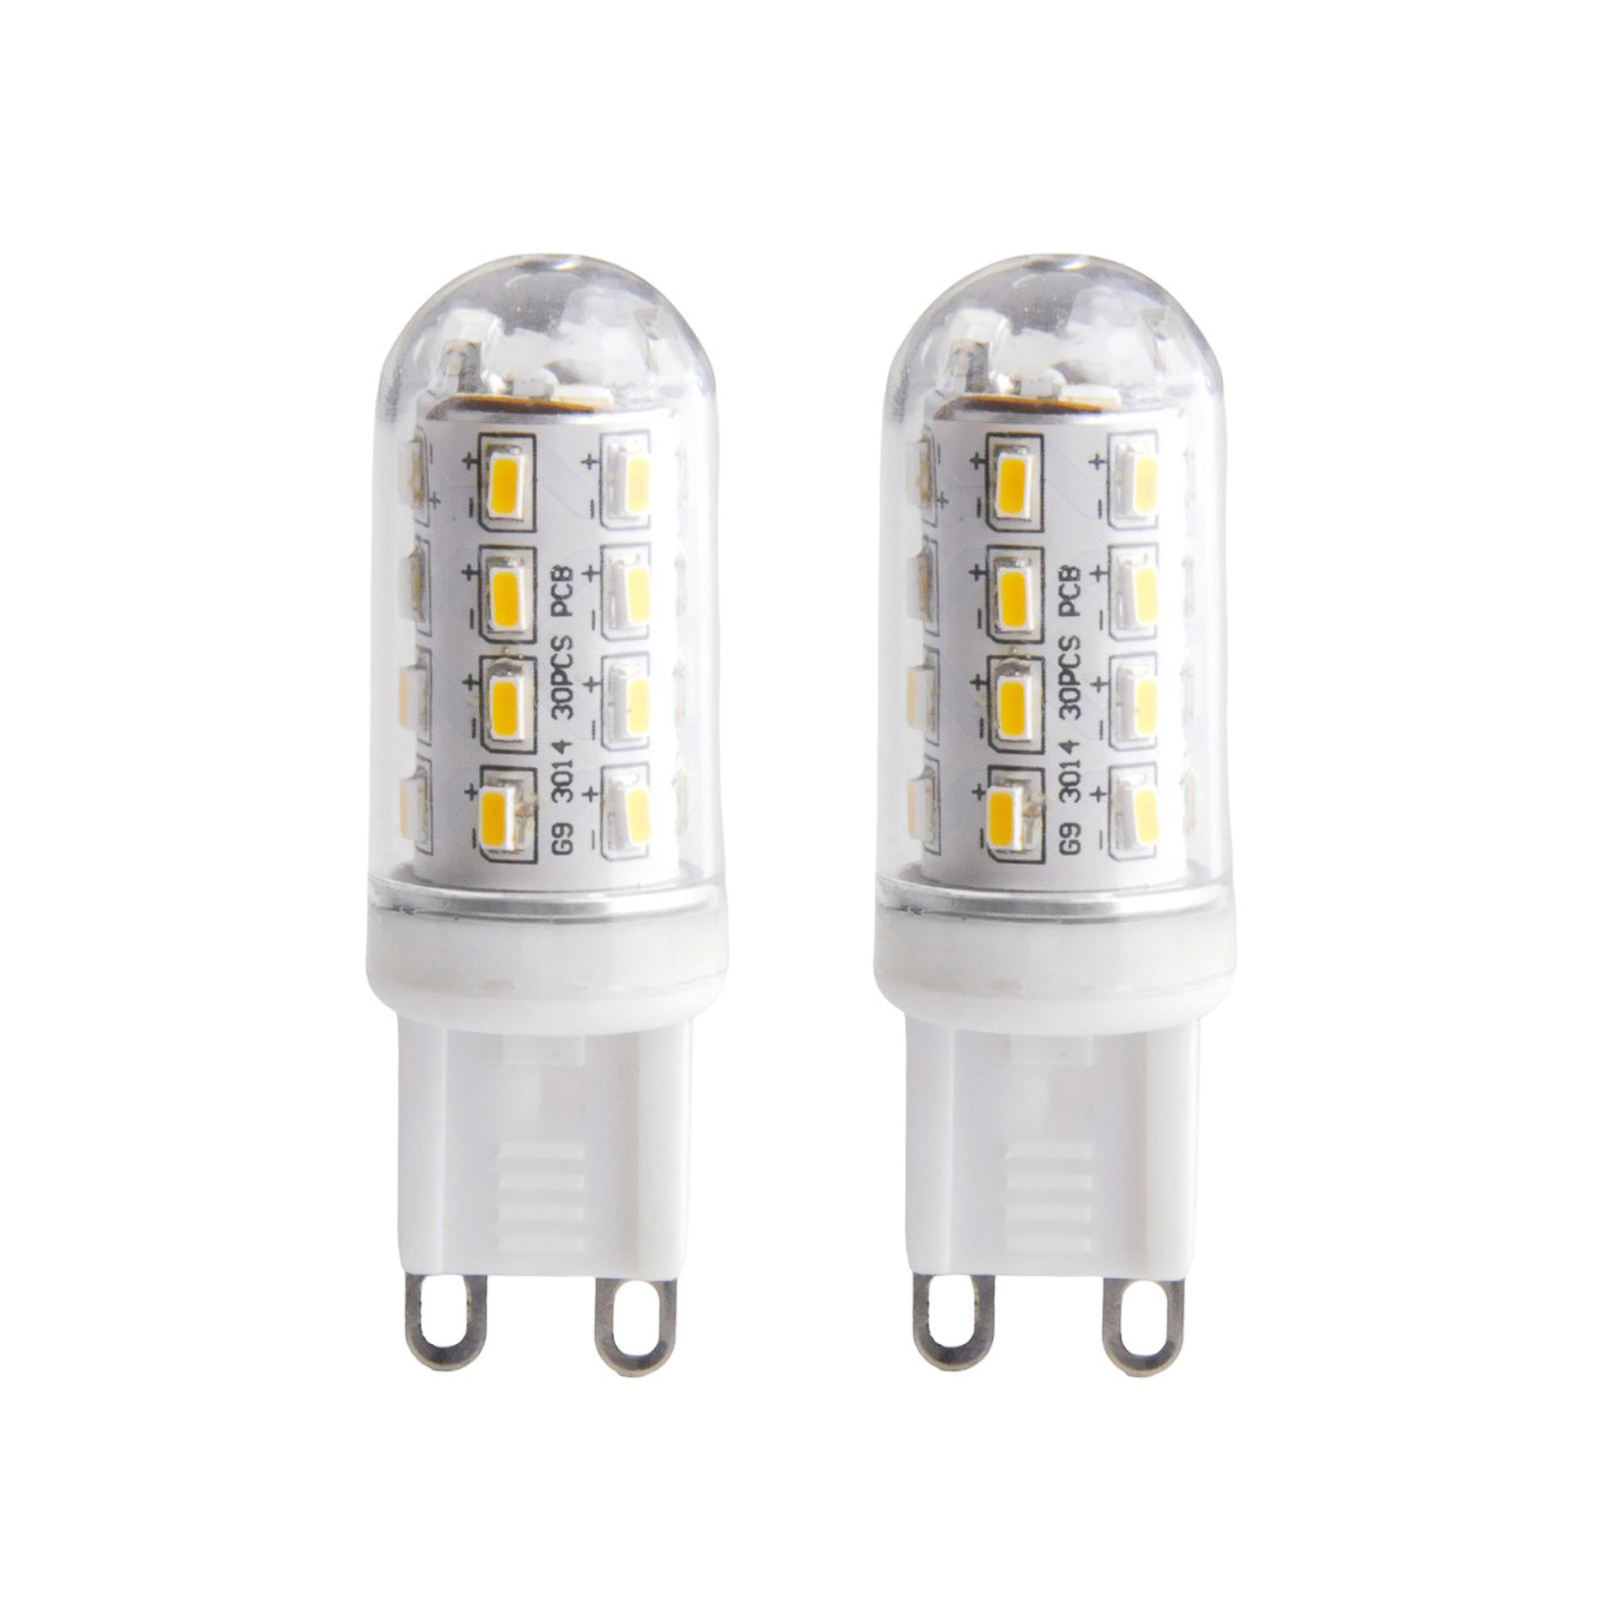 LED-lampa i rörform G9 3W 830 klar 2-pack